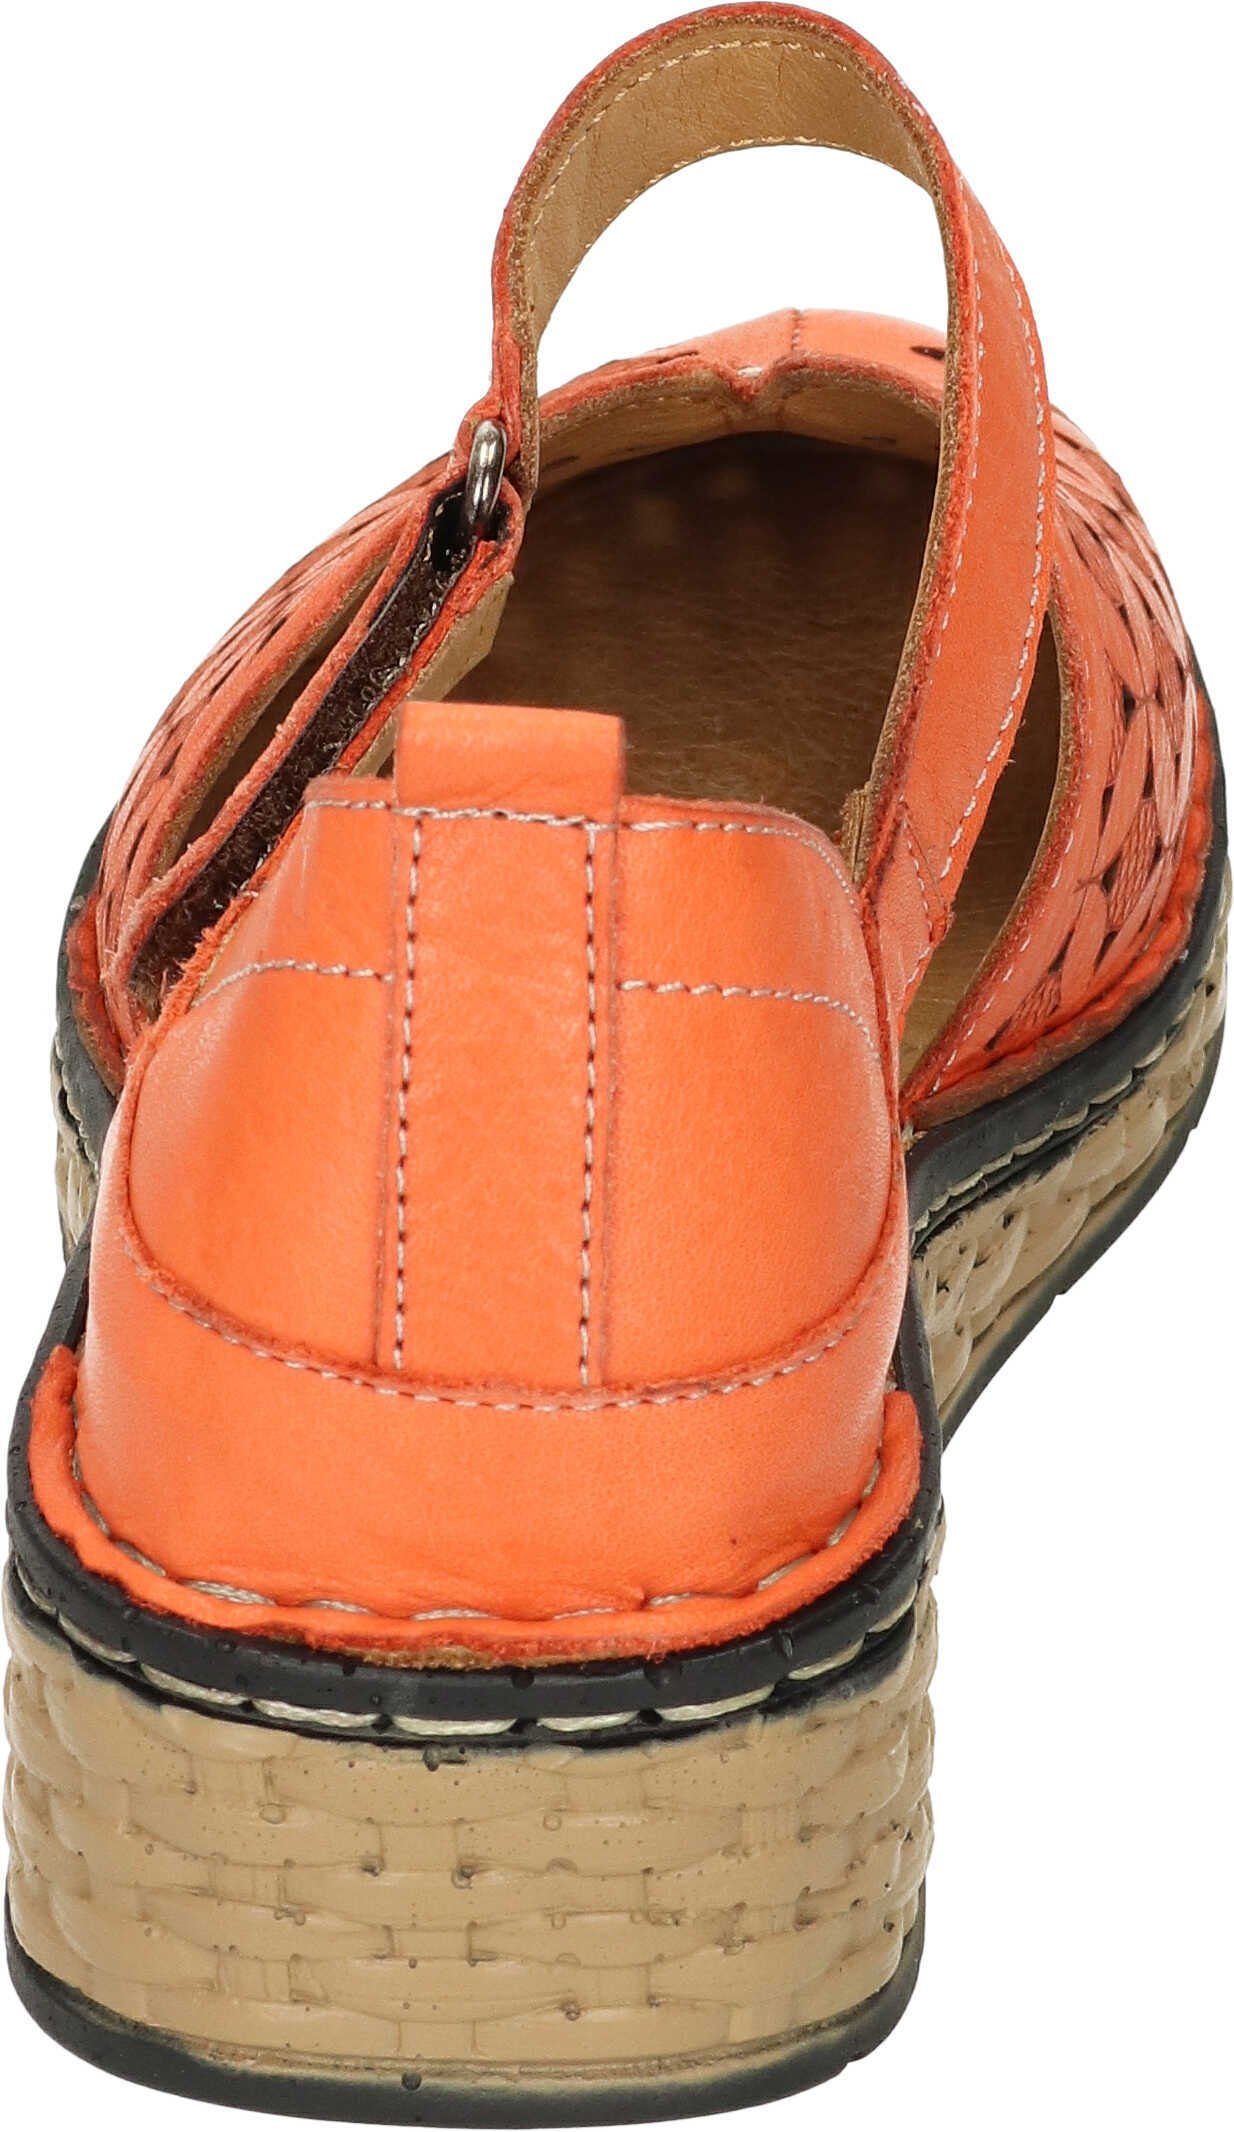 Manitu echtem Sandaletten Leder orange Sandalette aus